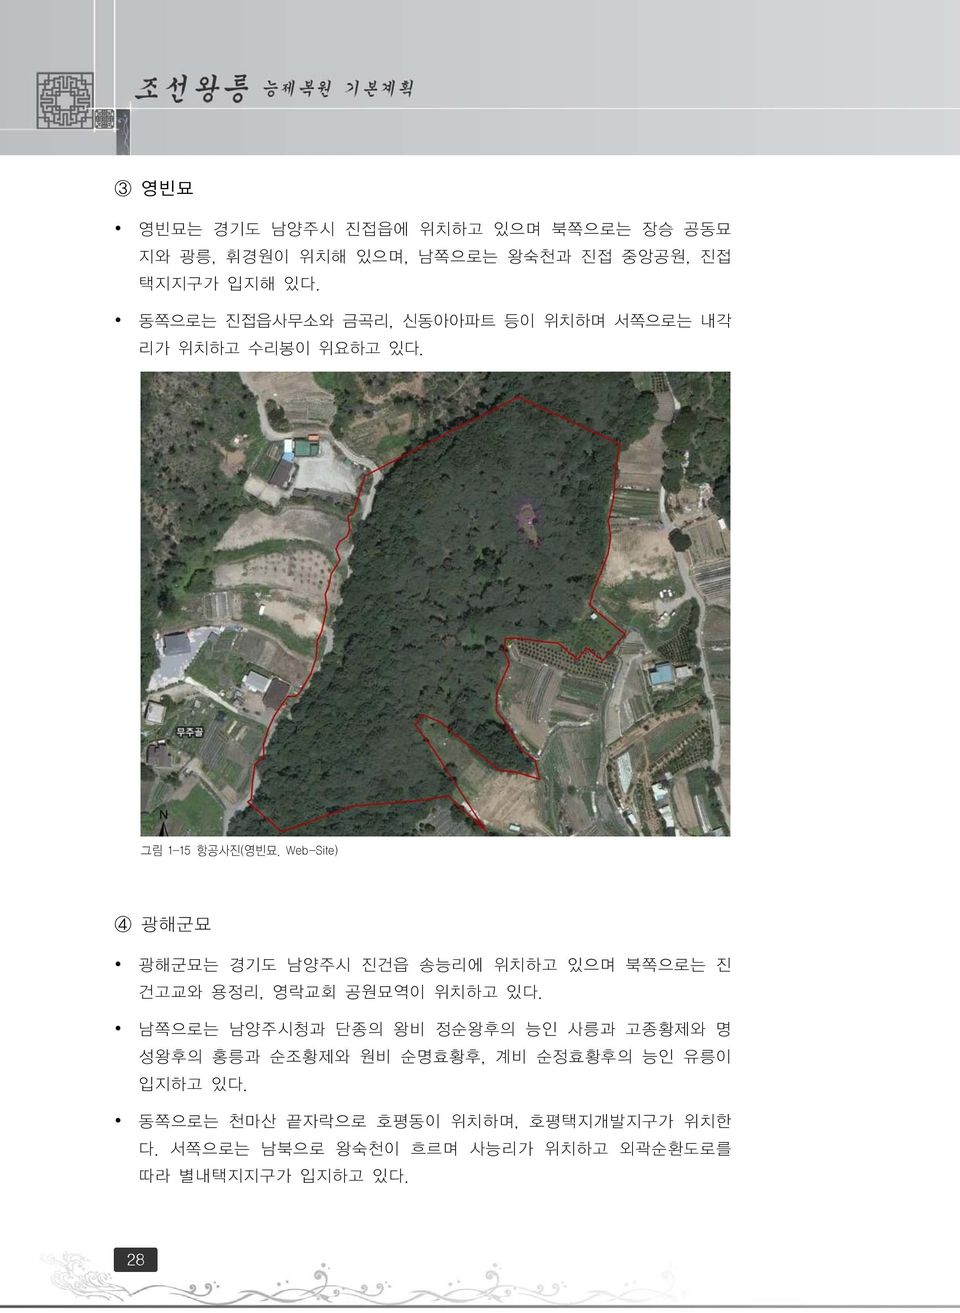 Web-Site) 4 광해군묘 광해군묘는 경기도 남양주시 진건읍 송능리에 위치하고 있으며 북쪽으로는 진 건고교와 용정리, 영락교회 공원묘역이 위치하고 있다.